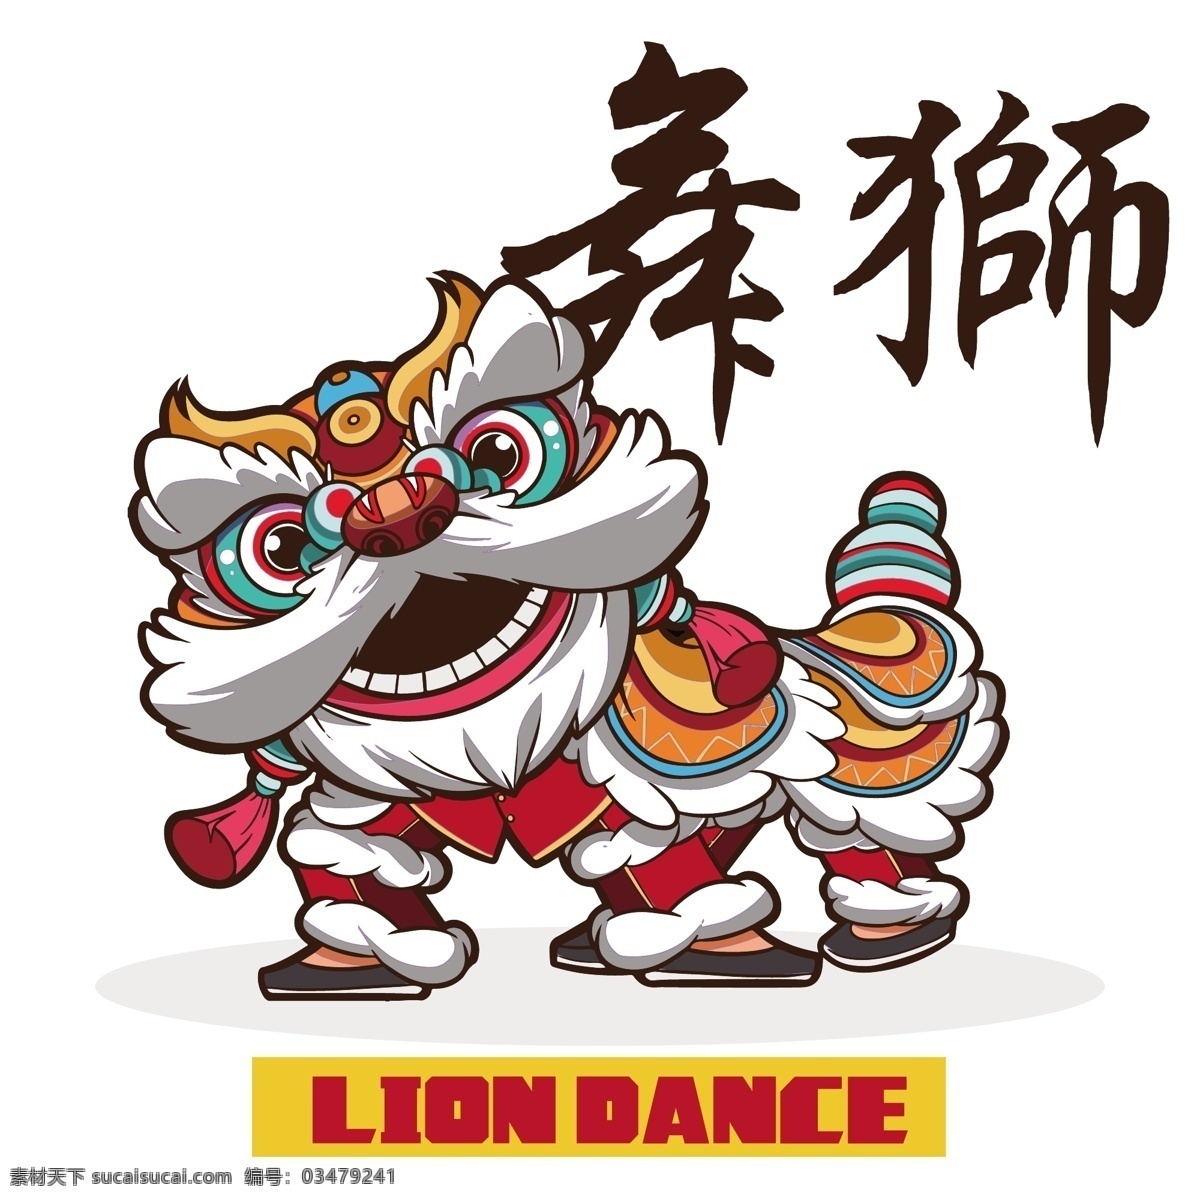 舞狮图片 舞狮 舞狮子 国潮 狮子头 狮子 狮 中国风 中国元素 过年 传统节日 传统运动 矢量图 文化艺术 传统文化